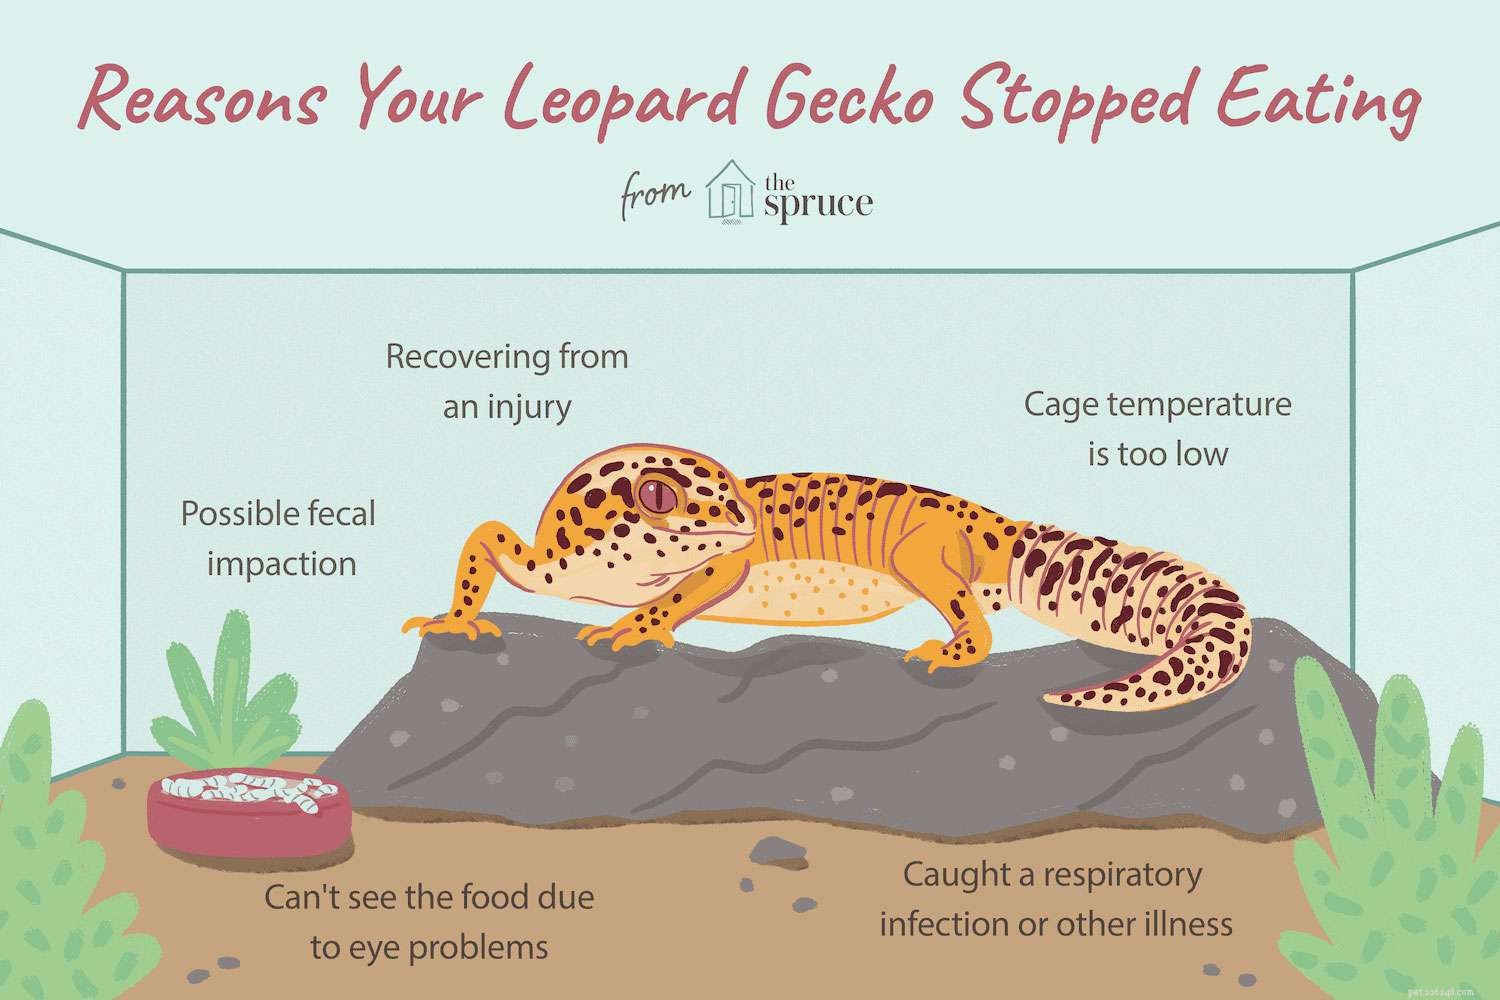 Co dělat, když váš leopardí gekon přestane jíst